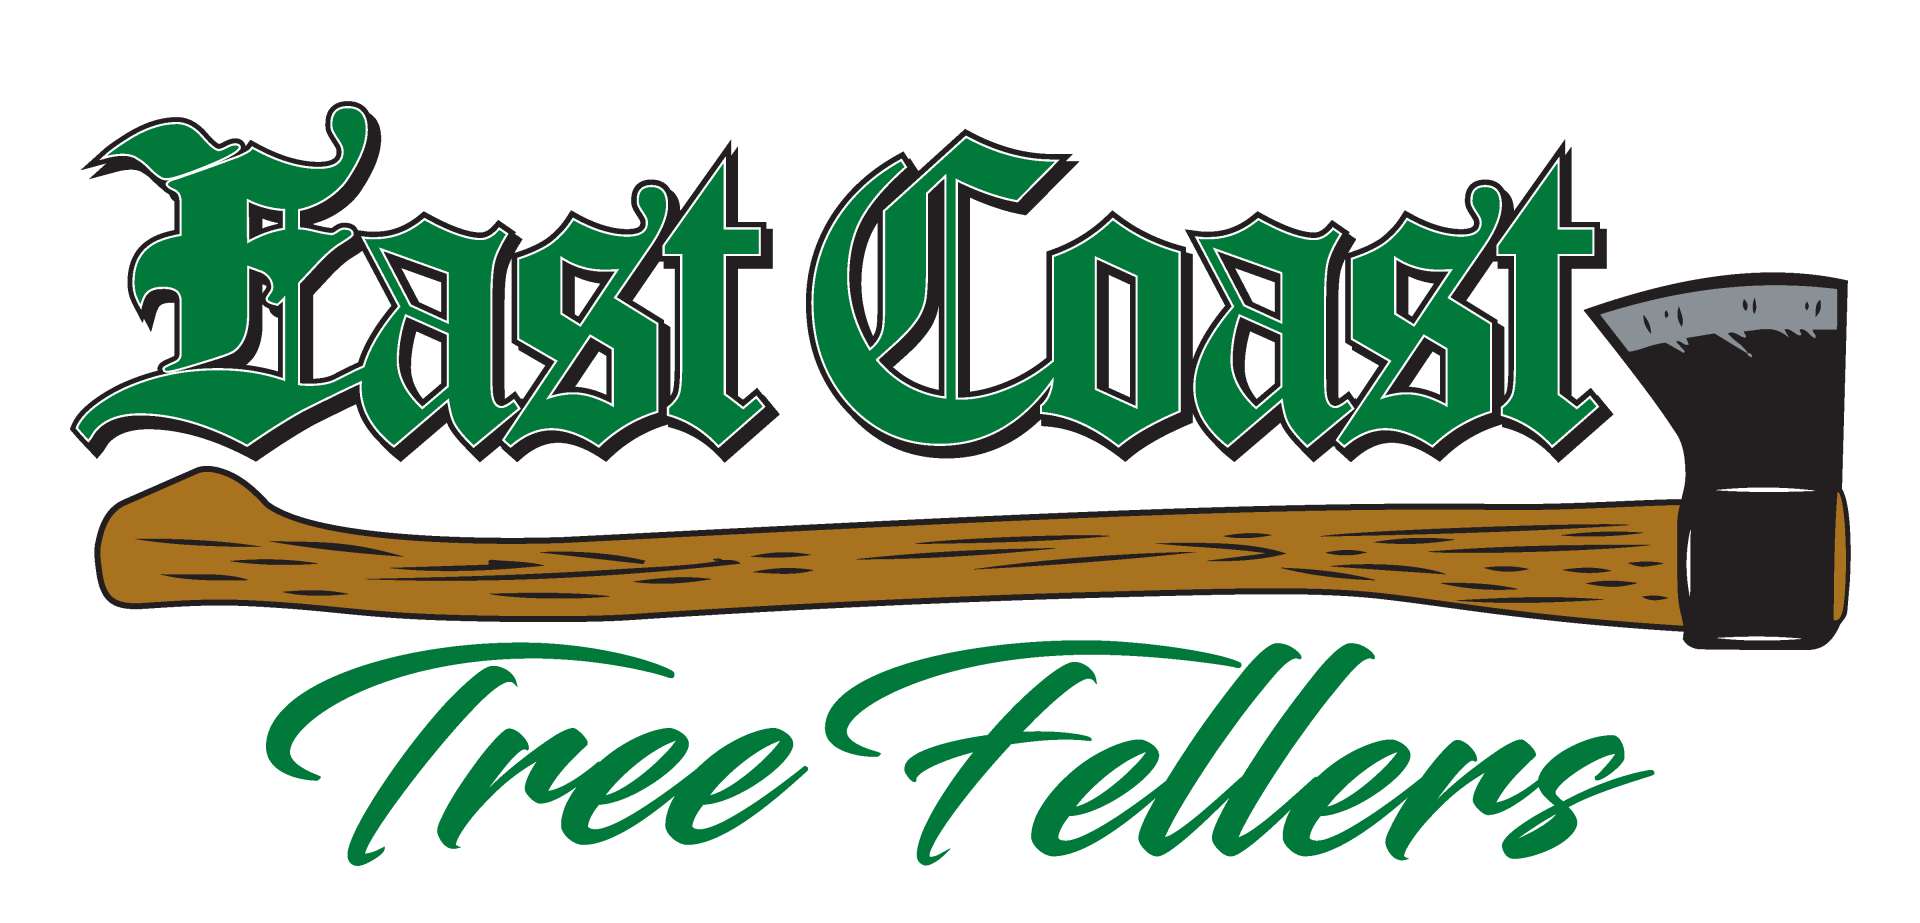 East Coast Tree Fellers LLC